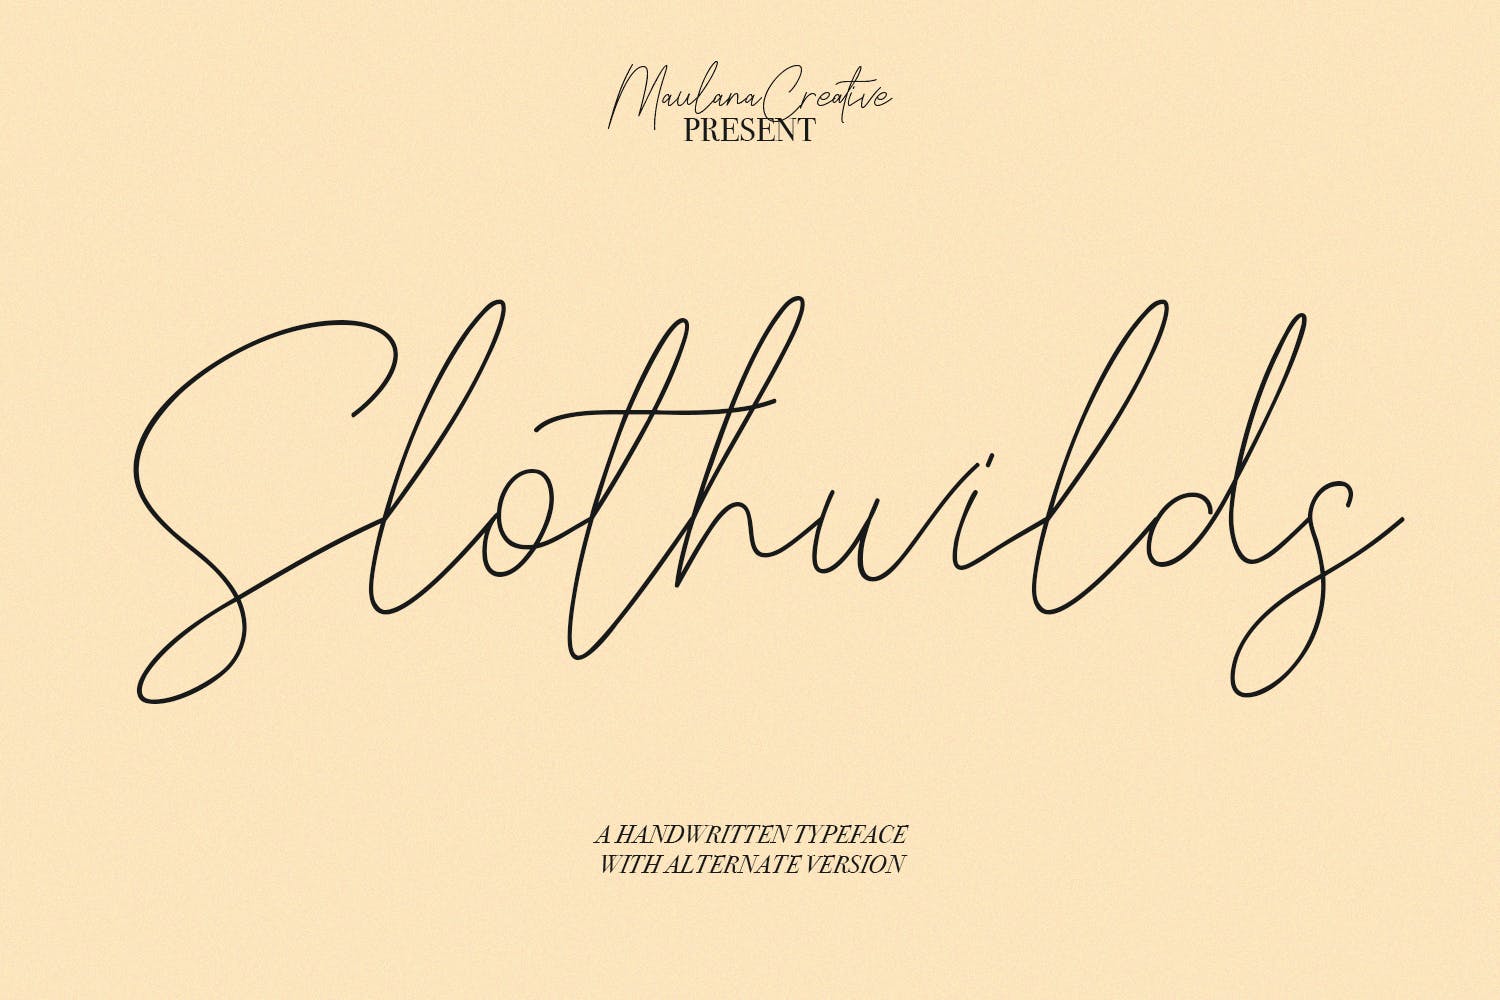 英文手写签名字体合集 Slothwilds Handwritten Typeface 设计素材 第1张